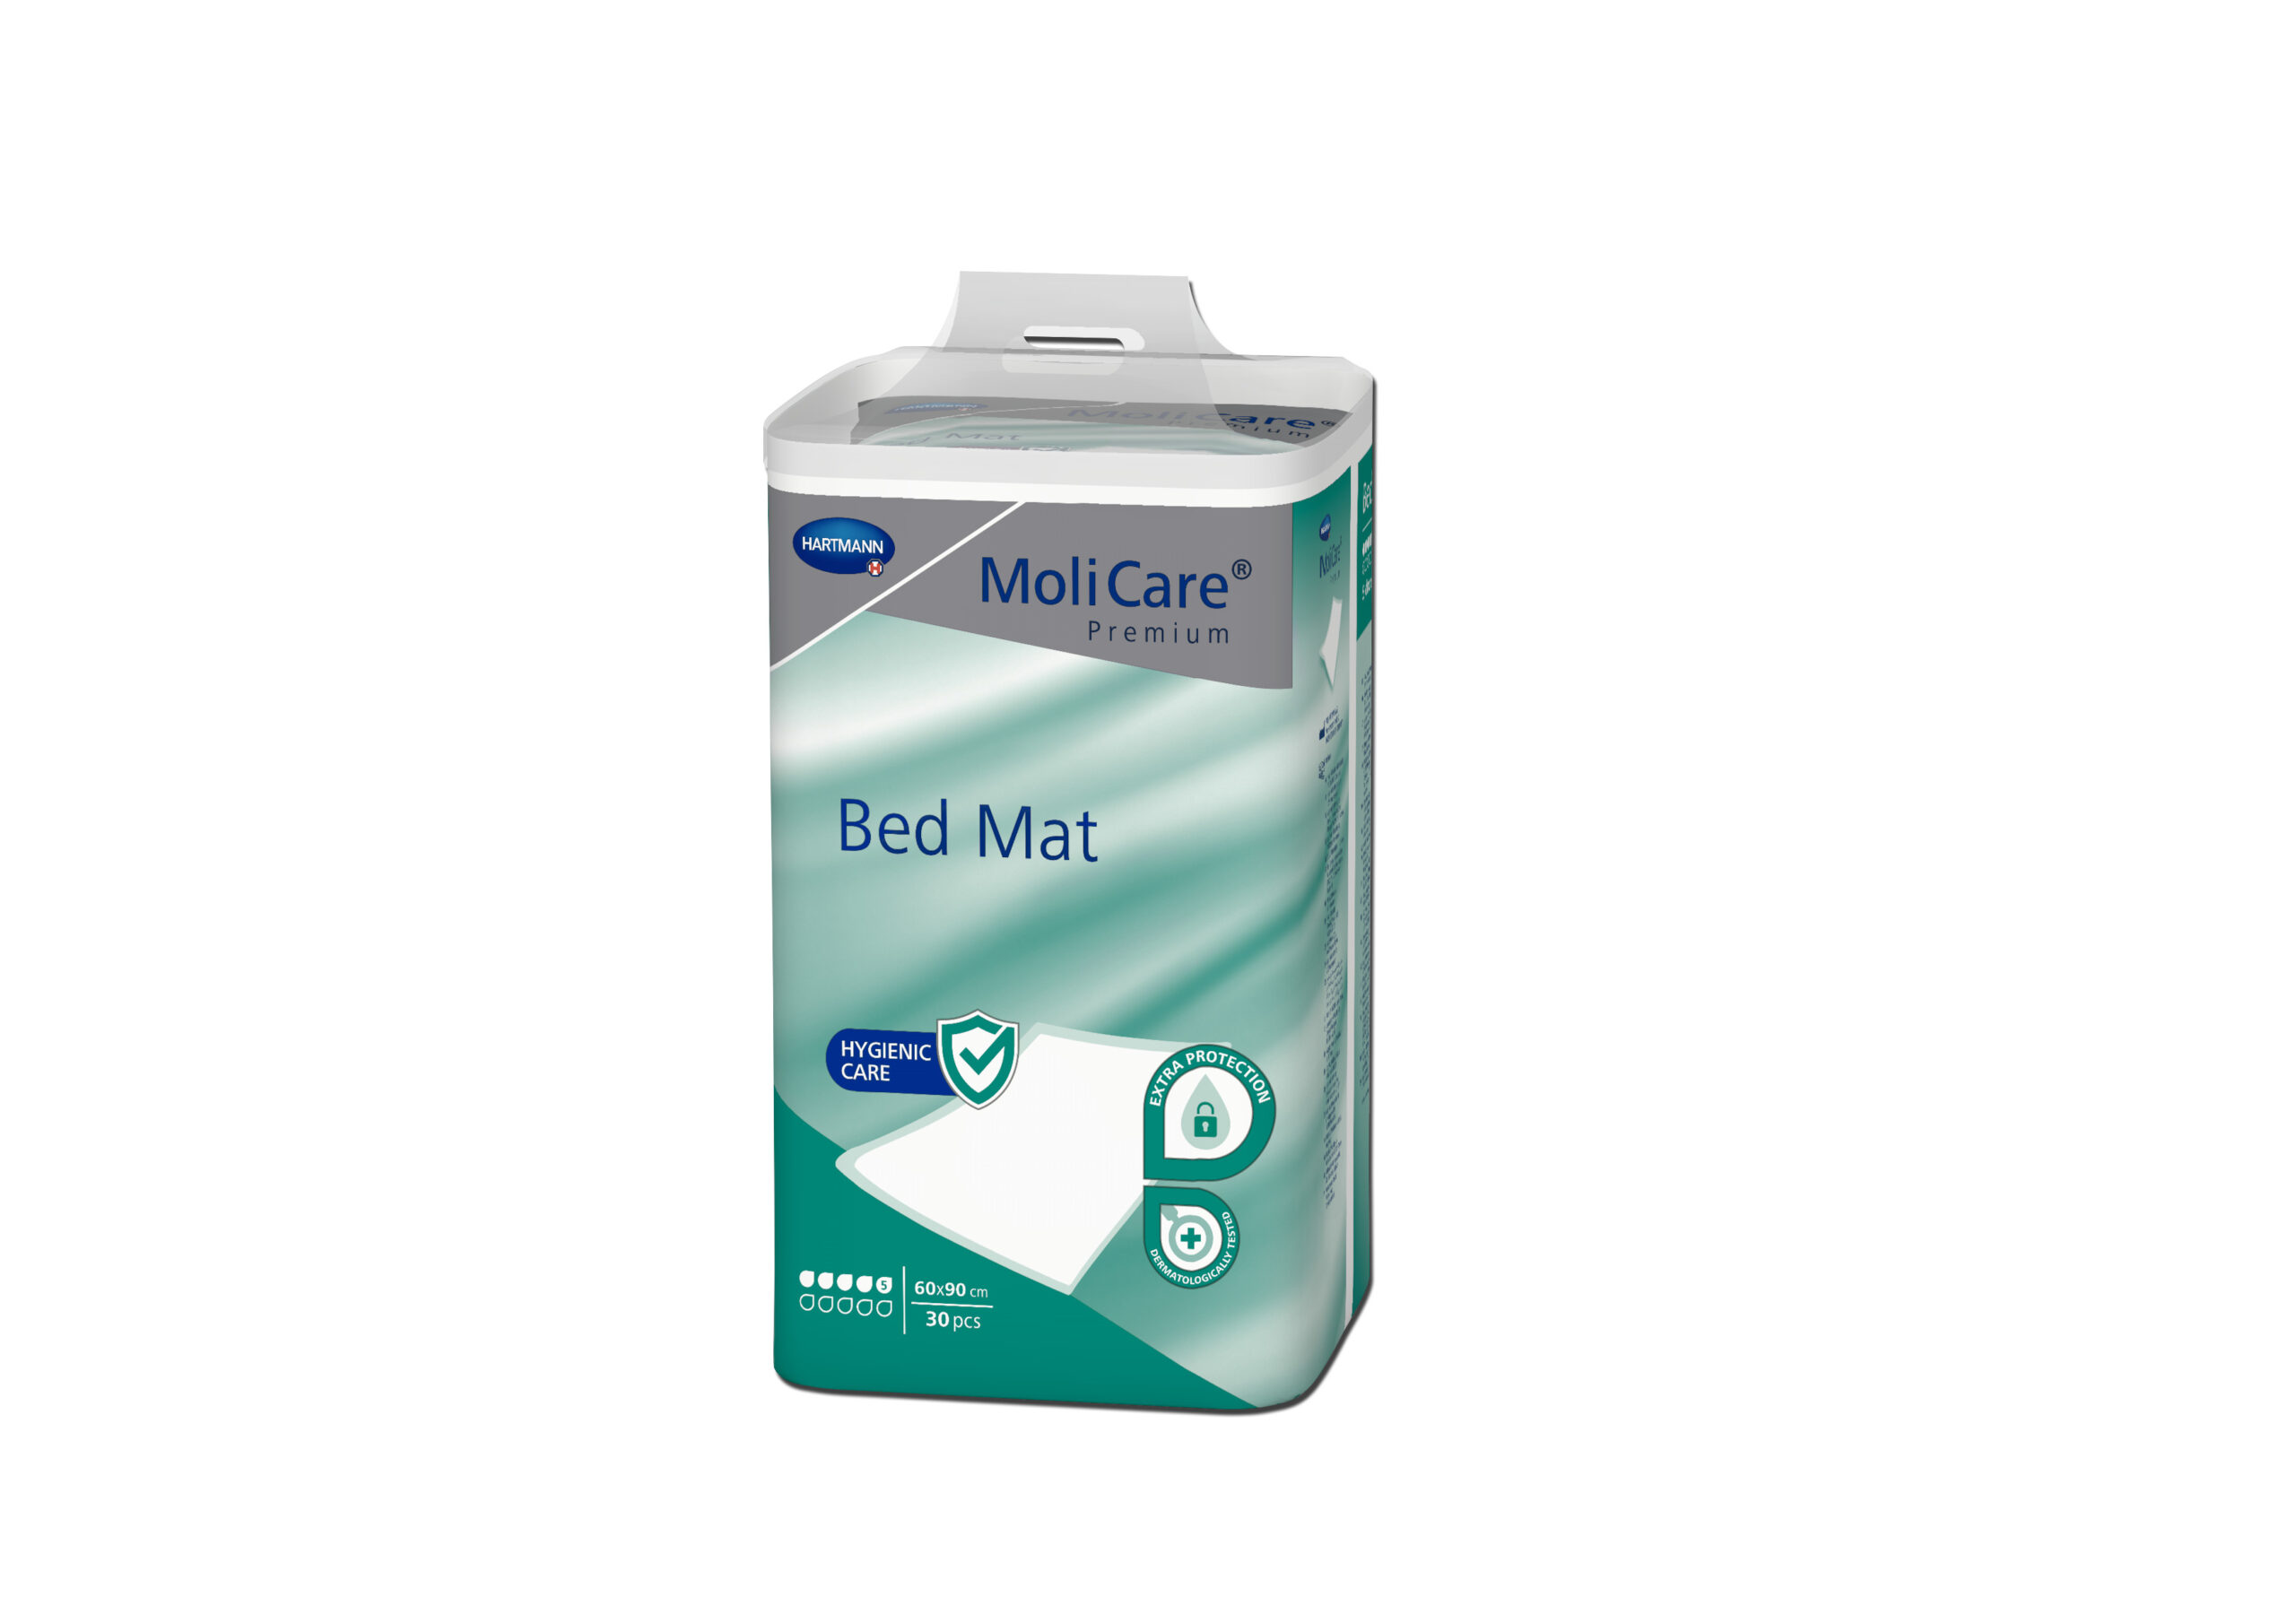 MoliCare Premium Bed Mat 5 picaturi 60x90cm 1